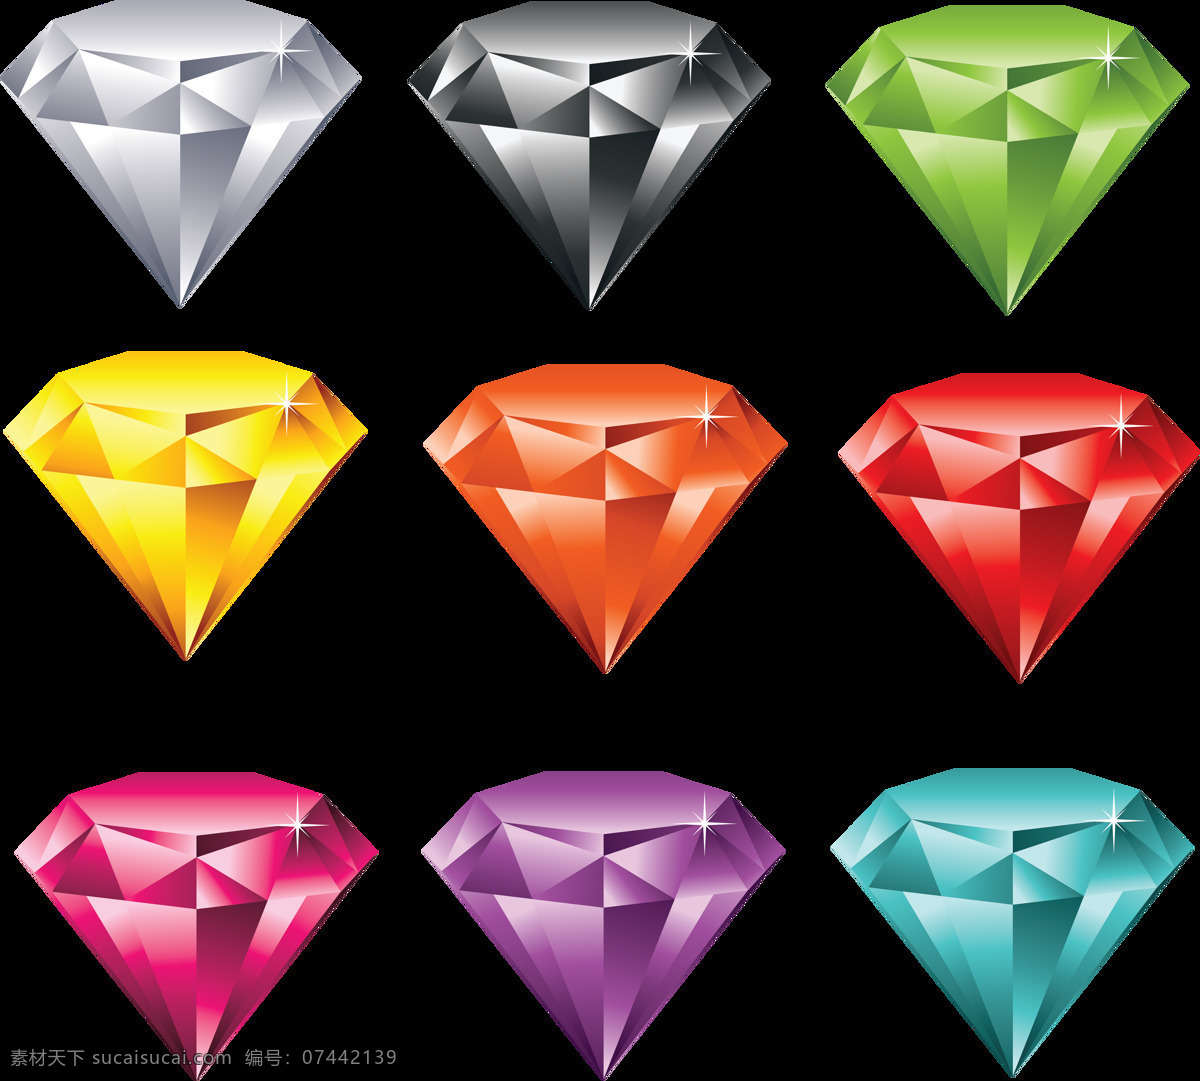 组 彩色 钻石 设计素材 彩钻 奢华 首饰 珠宝 精美 装饰 png素材 平面